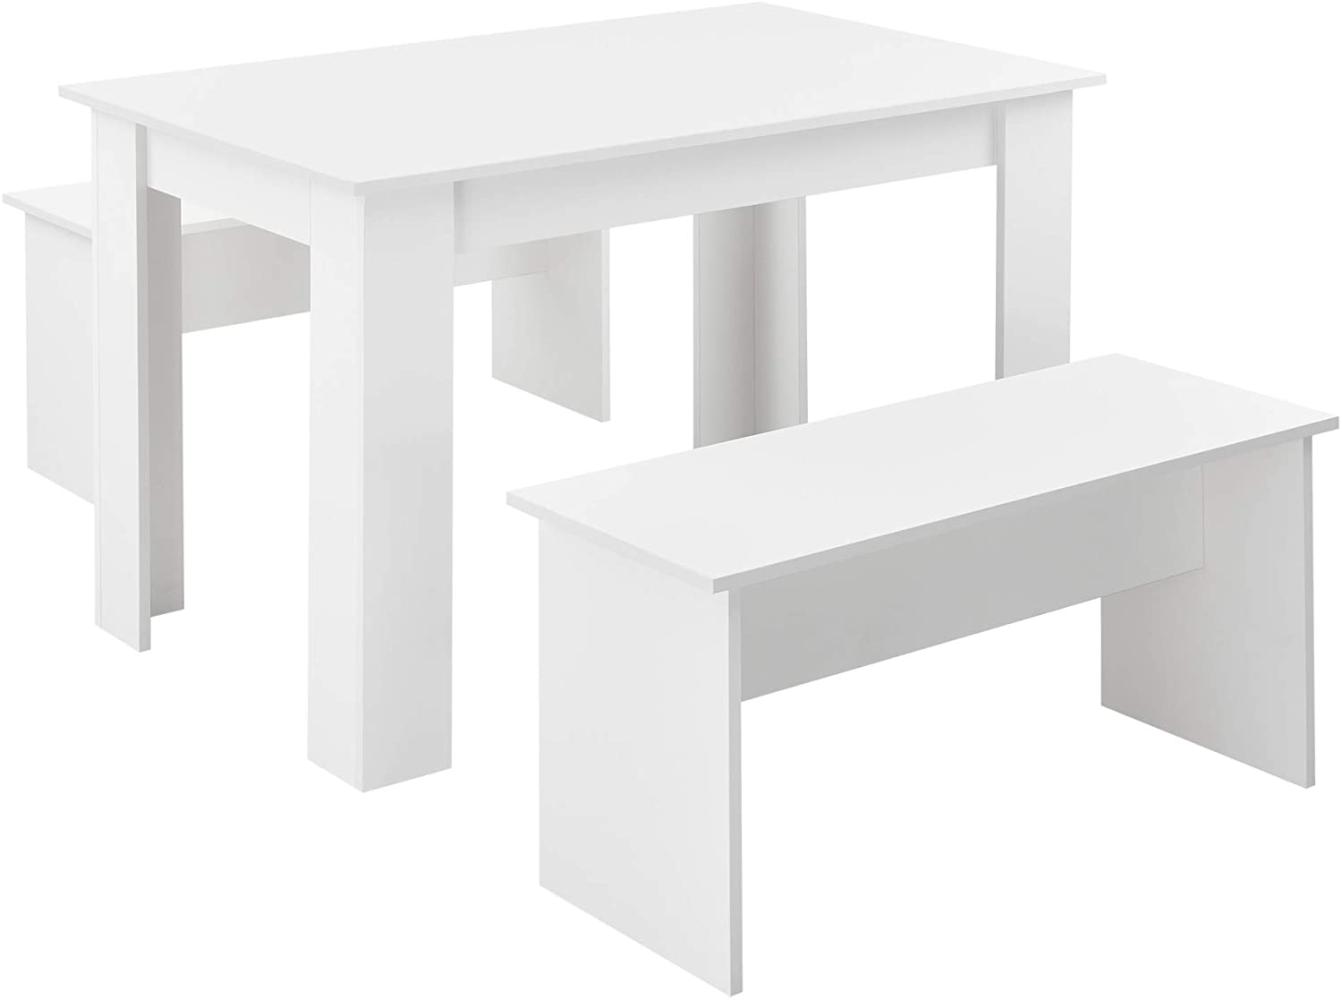 Tisch- und Bank Set Hokksund 110x70 cm mit 2 Bänken Weiß en. casa Bild 1